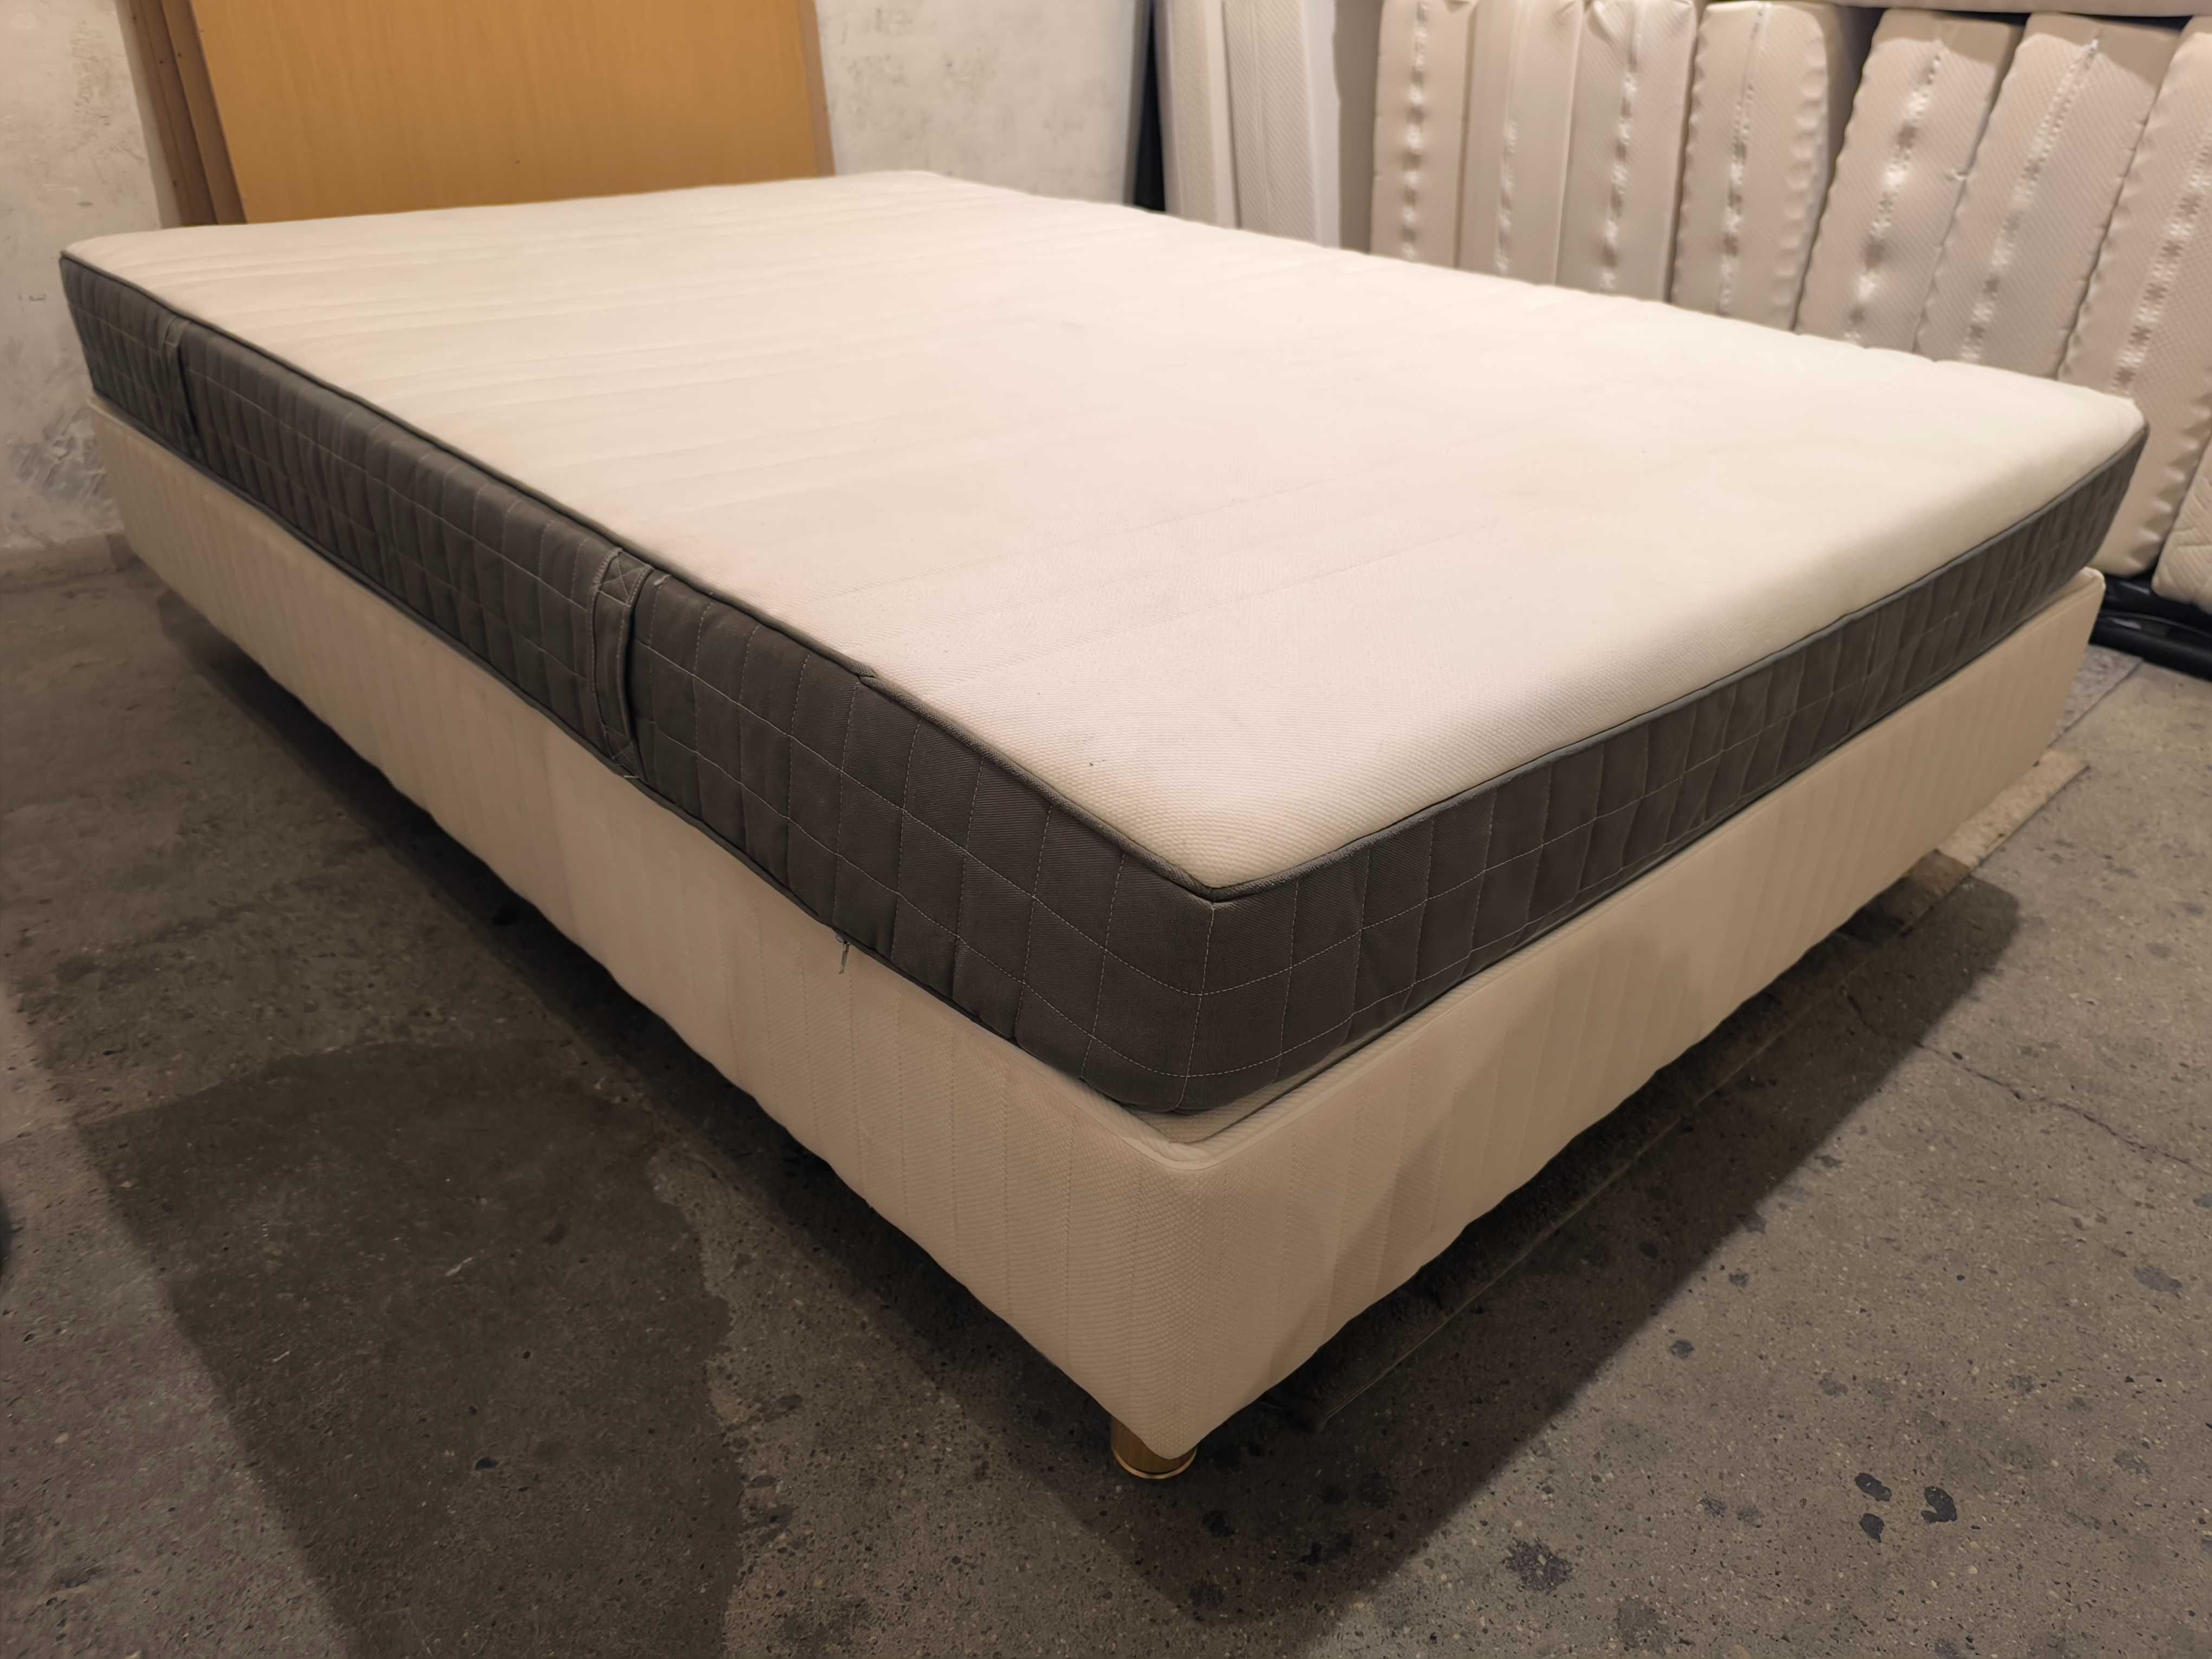 Łóżko 140x200 kontynentalne JAK NOWE + Materac Ikea Morgedal Zadbany